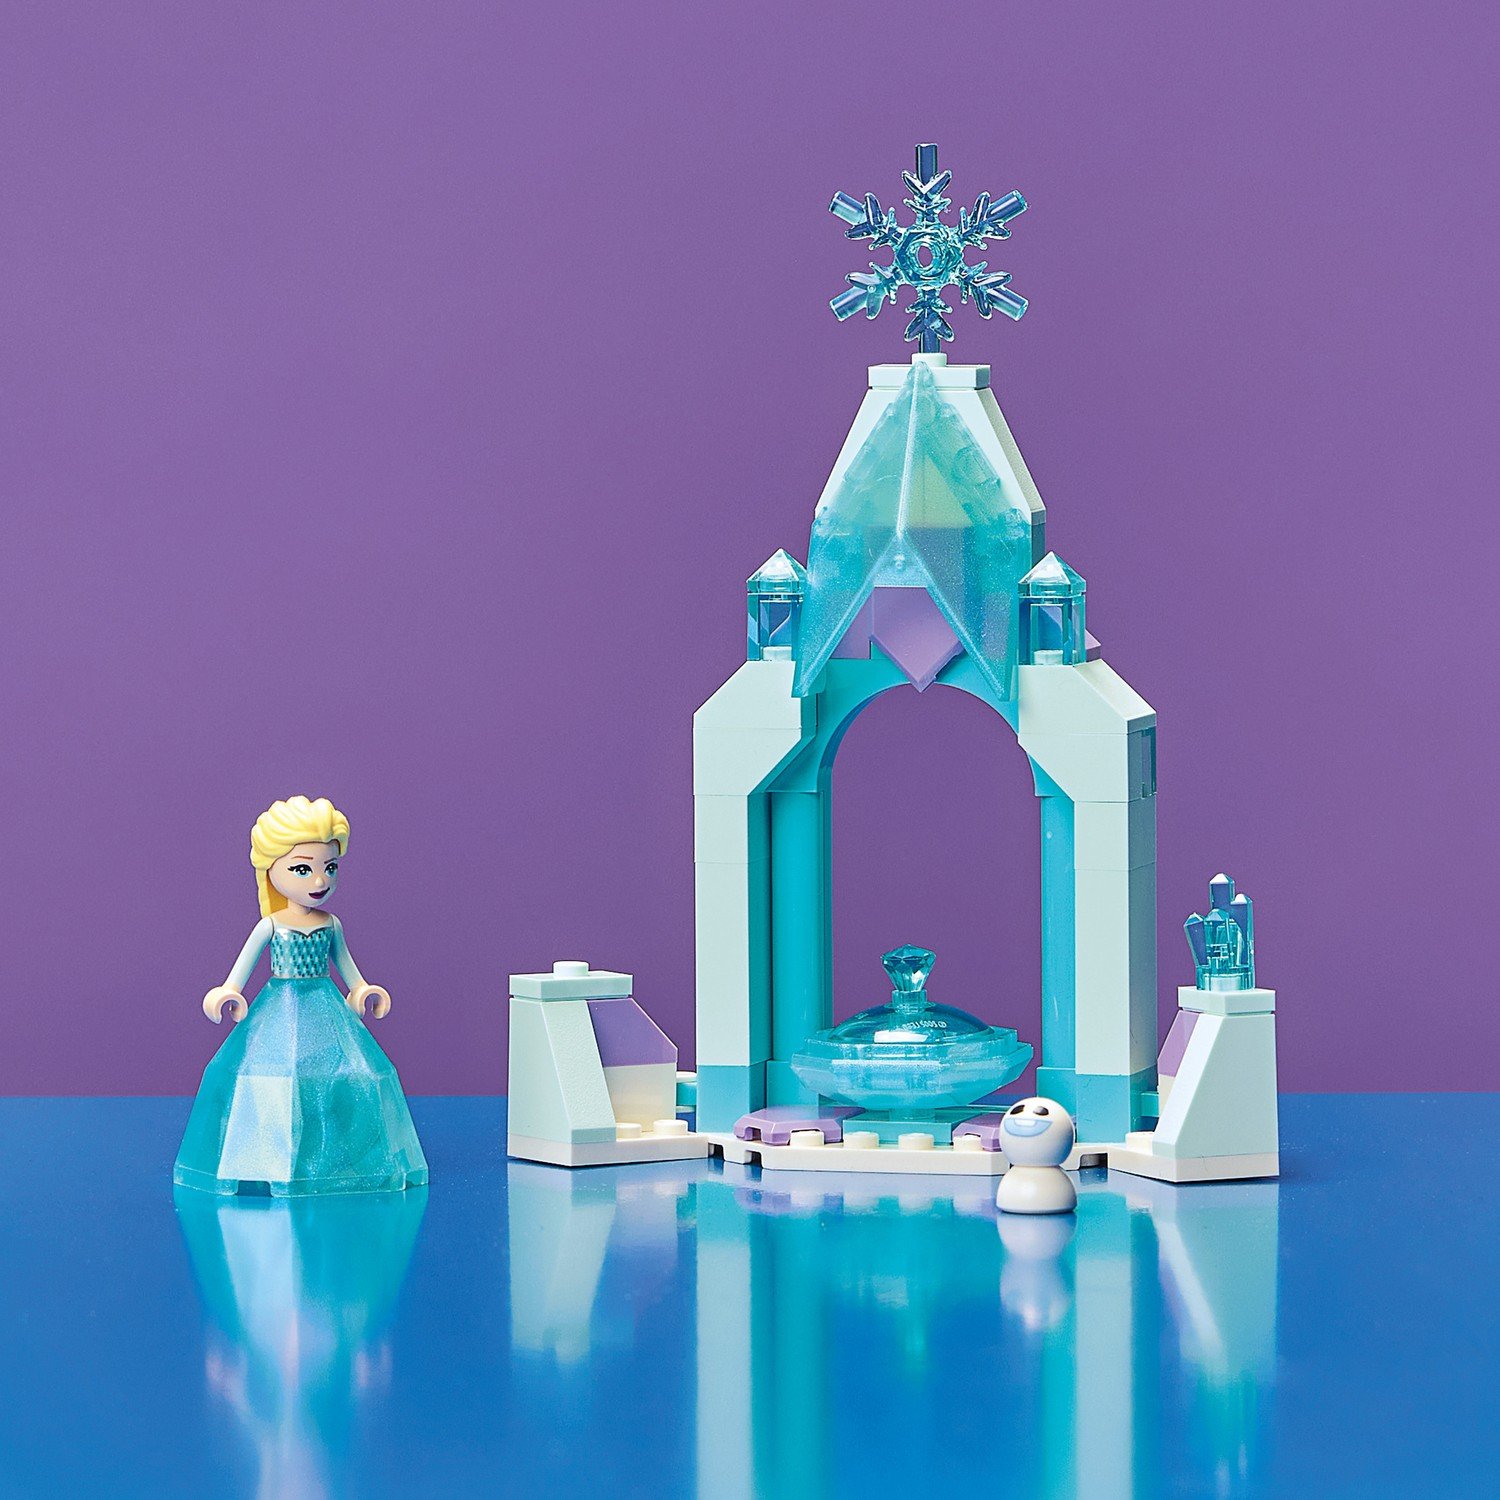 Lego Disney Princess 43199 Двор замка Эльзы